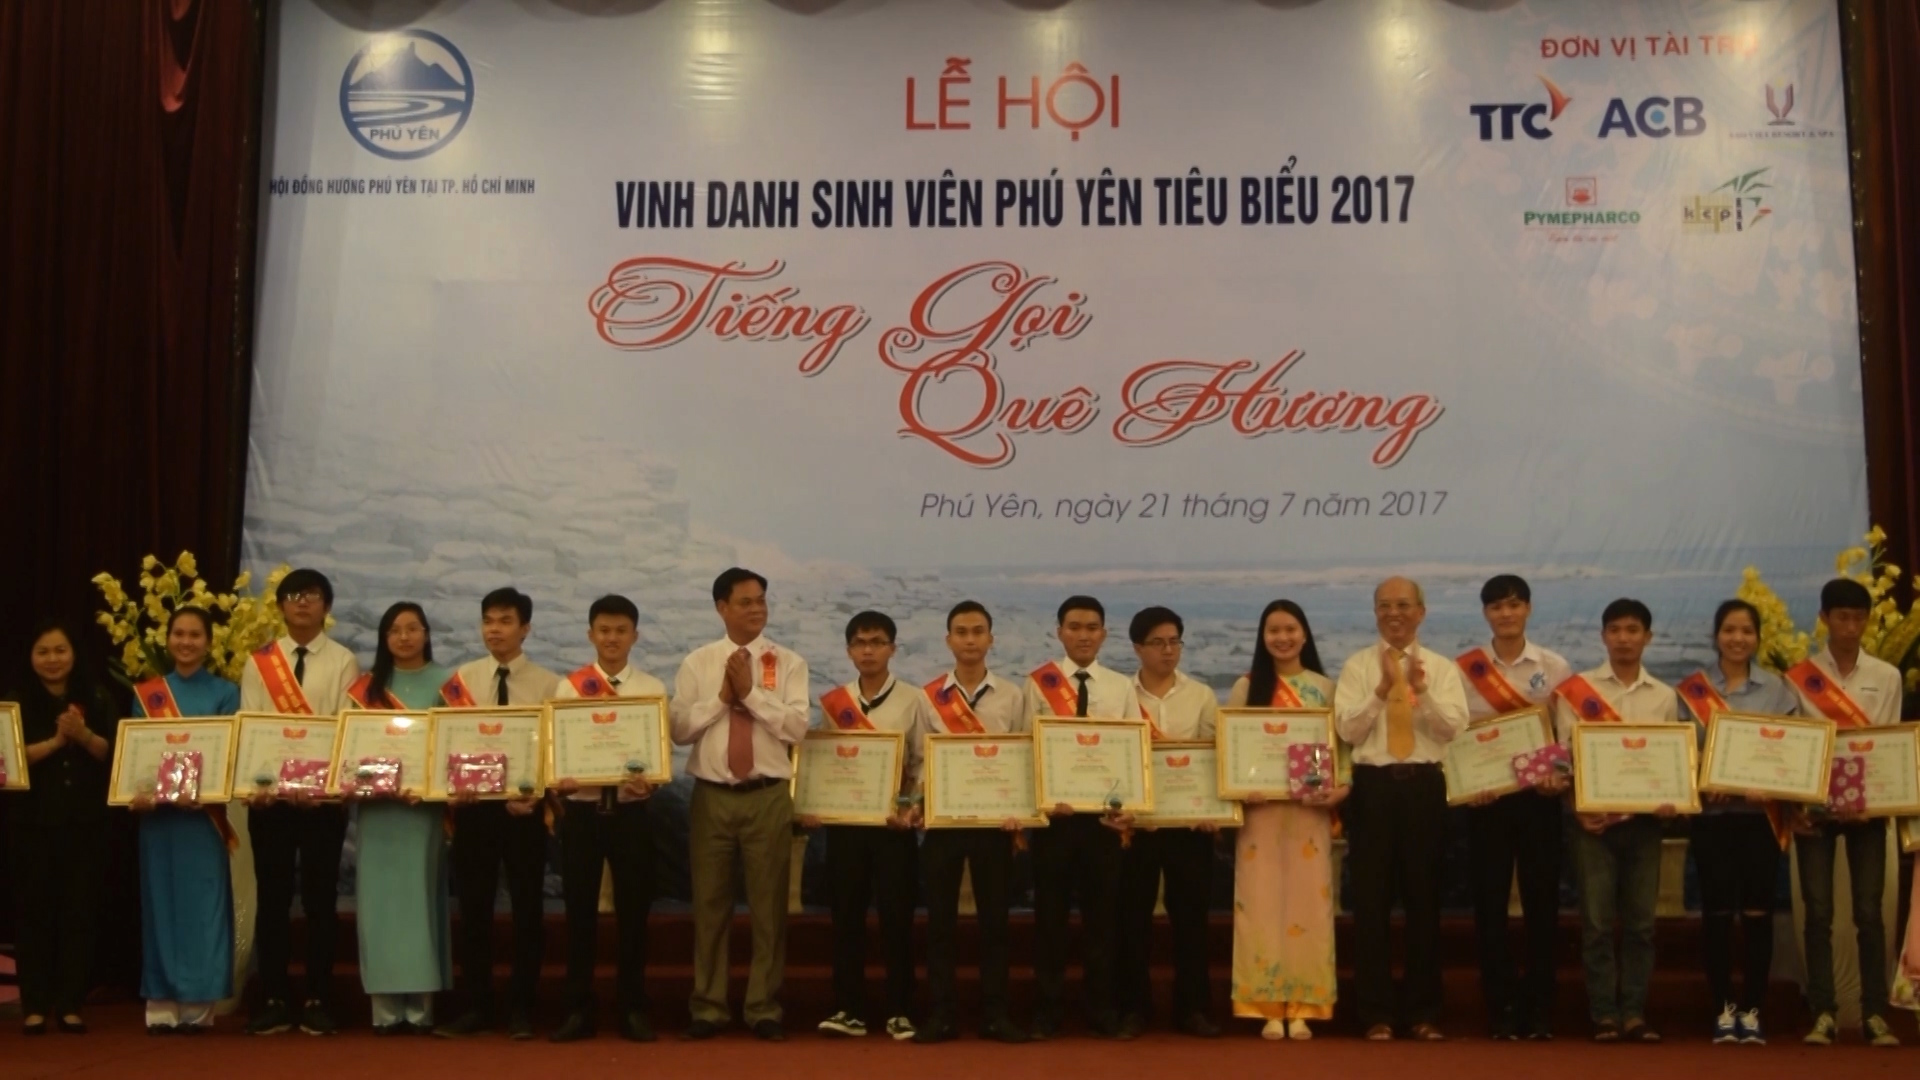 Lễ hội vinh danh 401 sinh viên Phú Yên tiêu biểu năm 2017